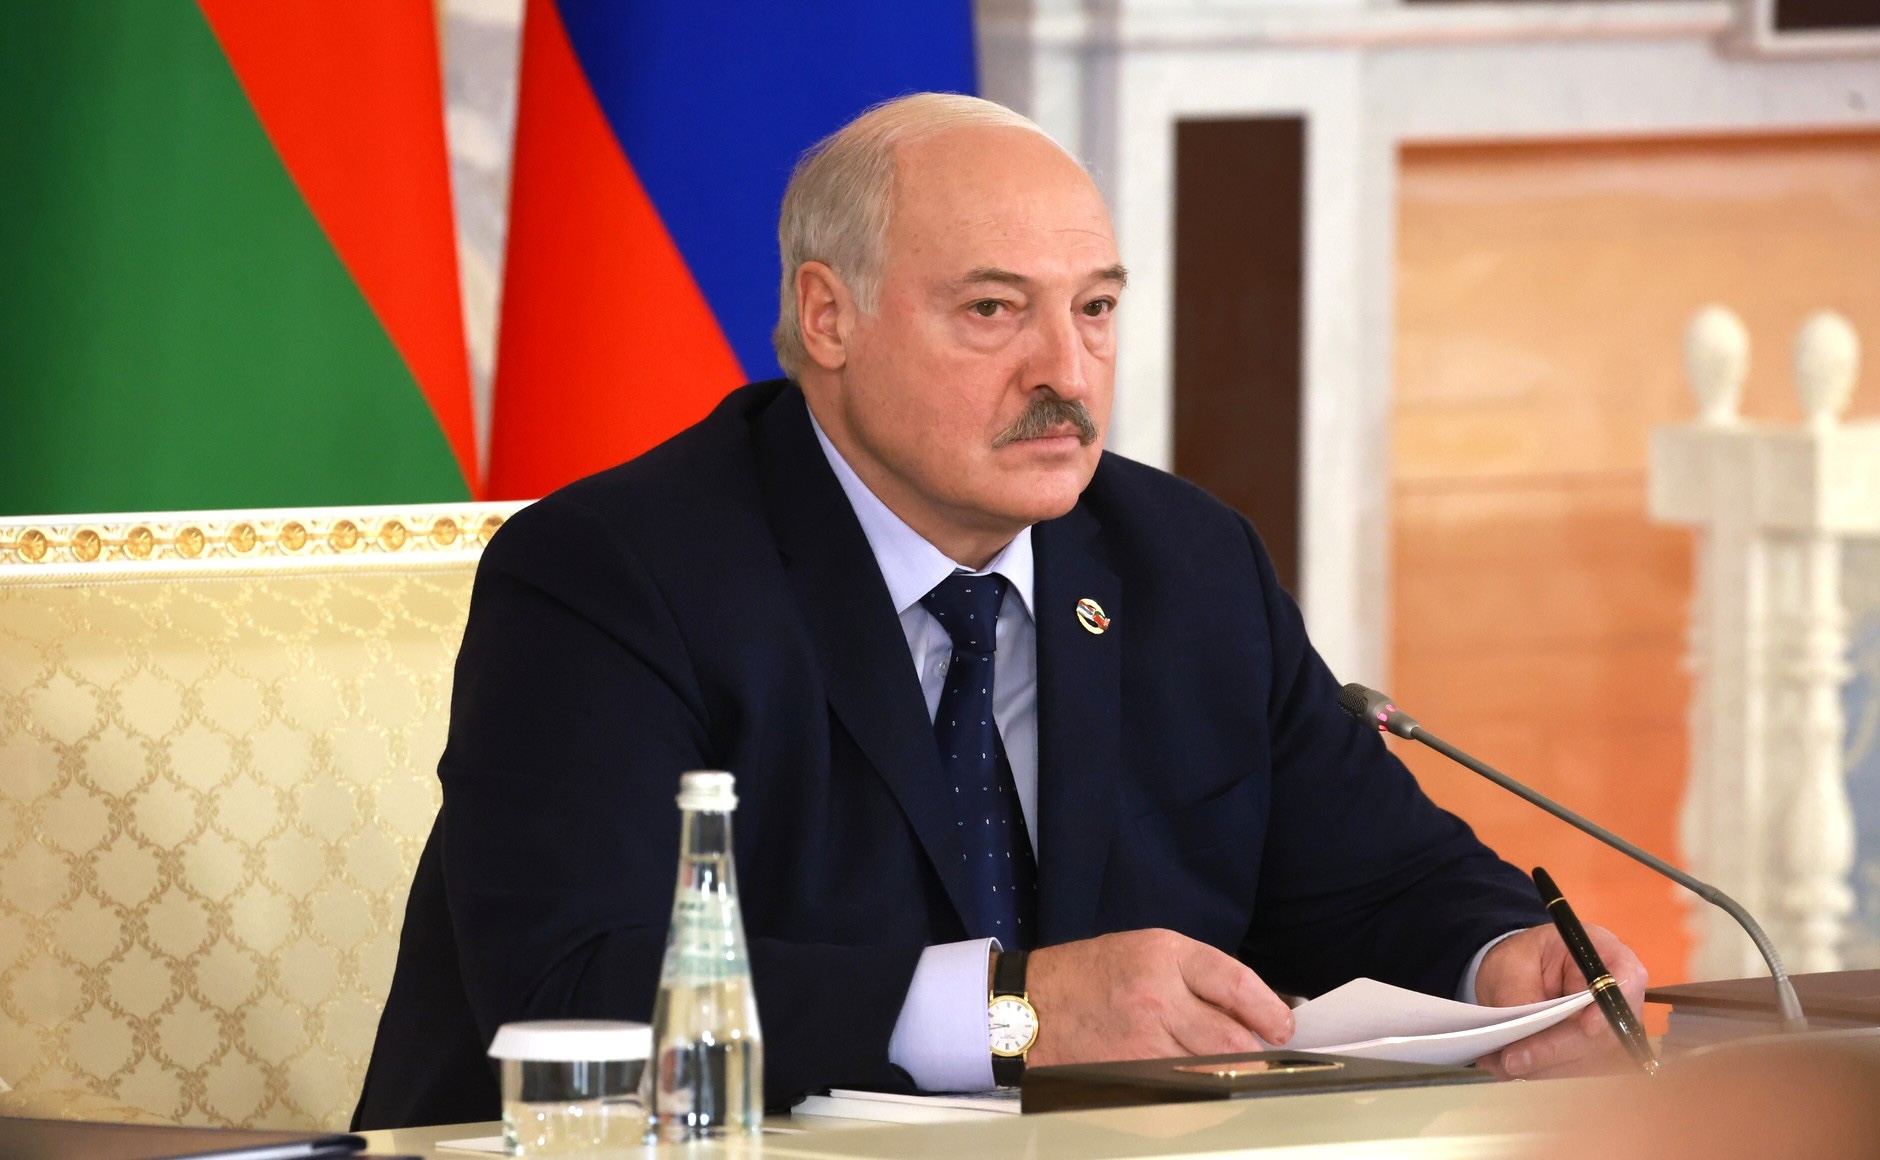 Культ личности Лукашенко, рост сомнений в победе Украины. Какие тренды зафиксированы в Беларуси